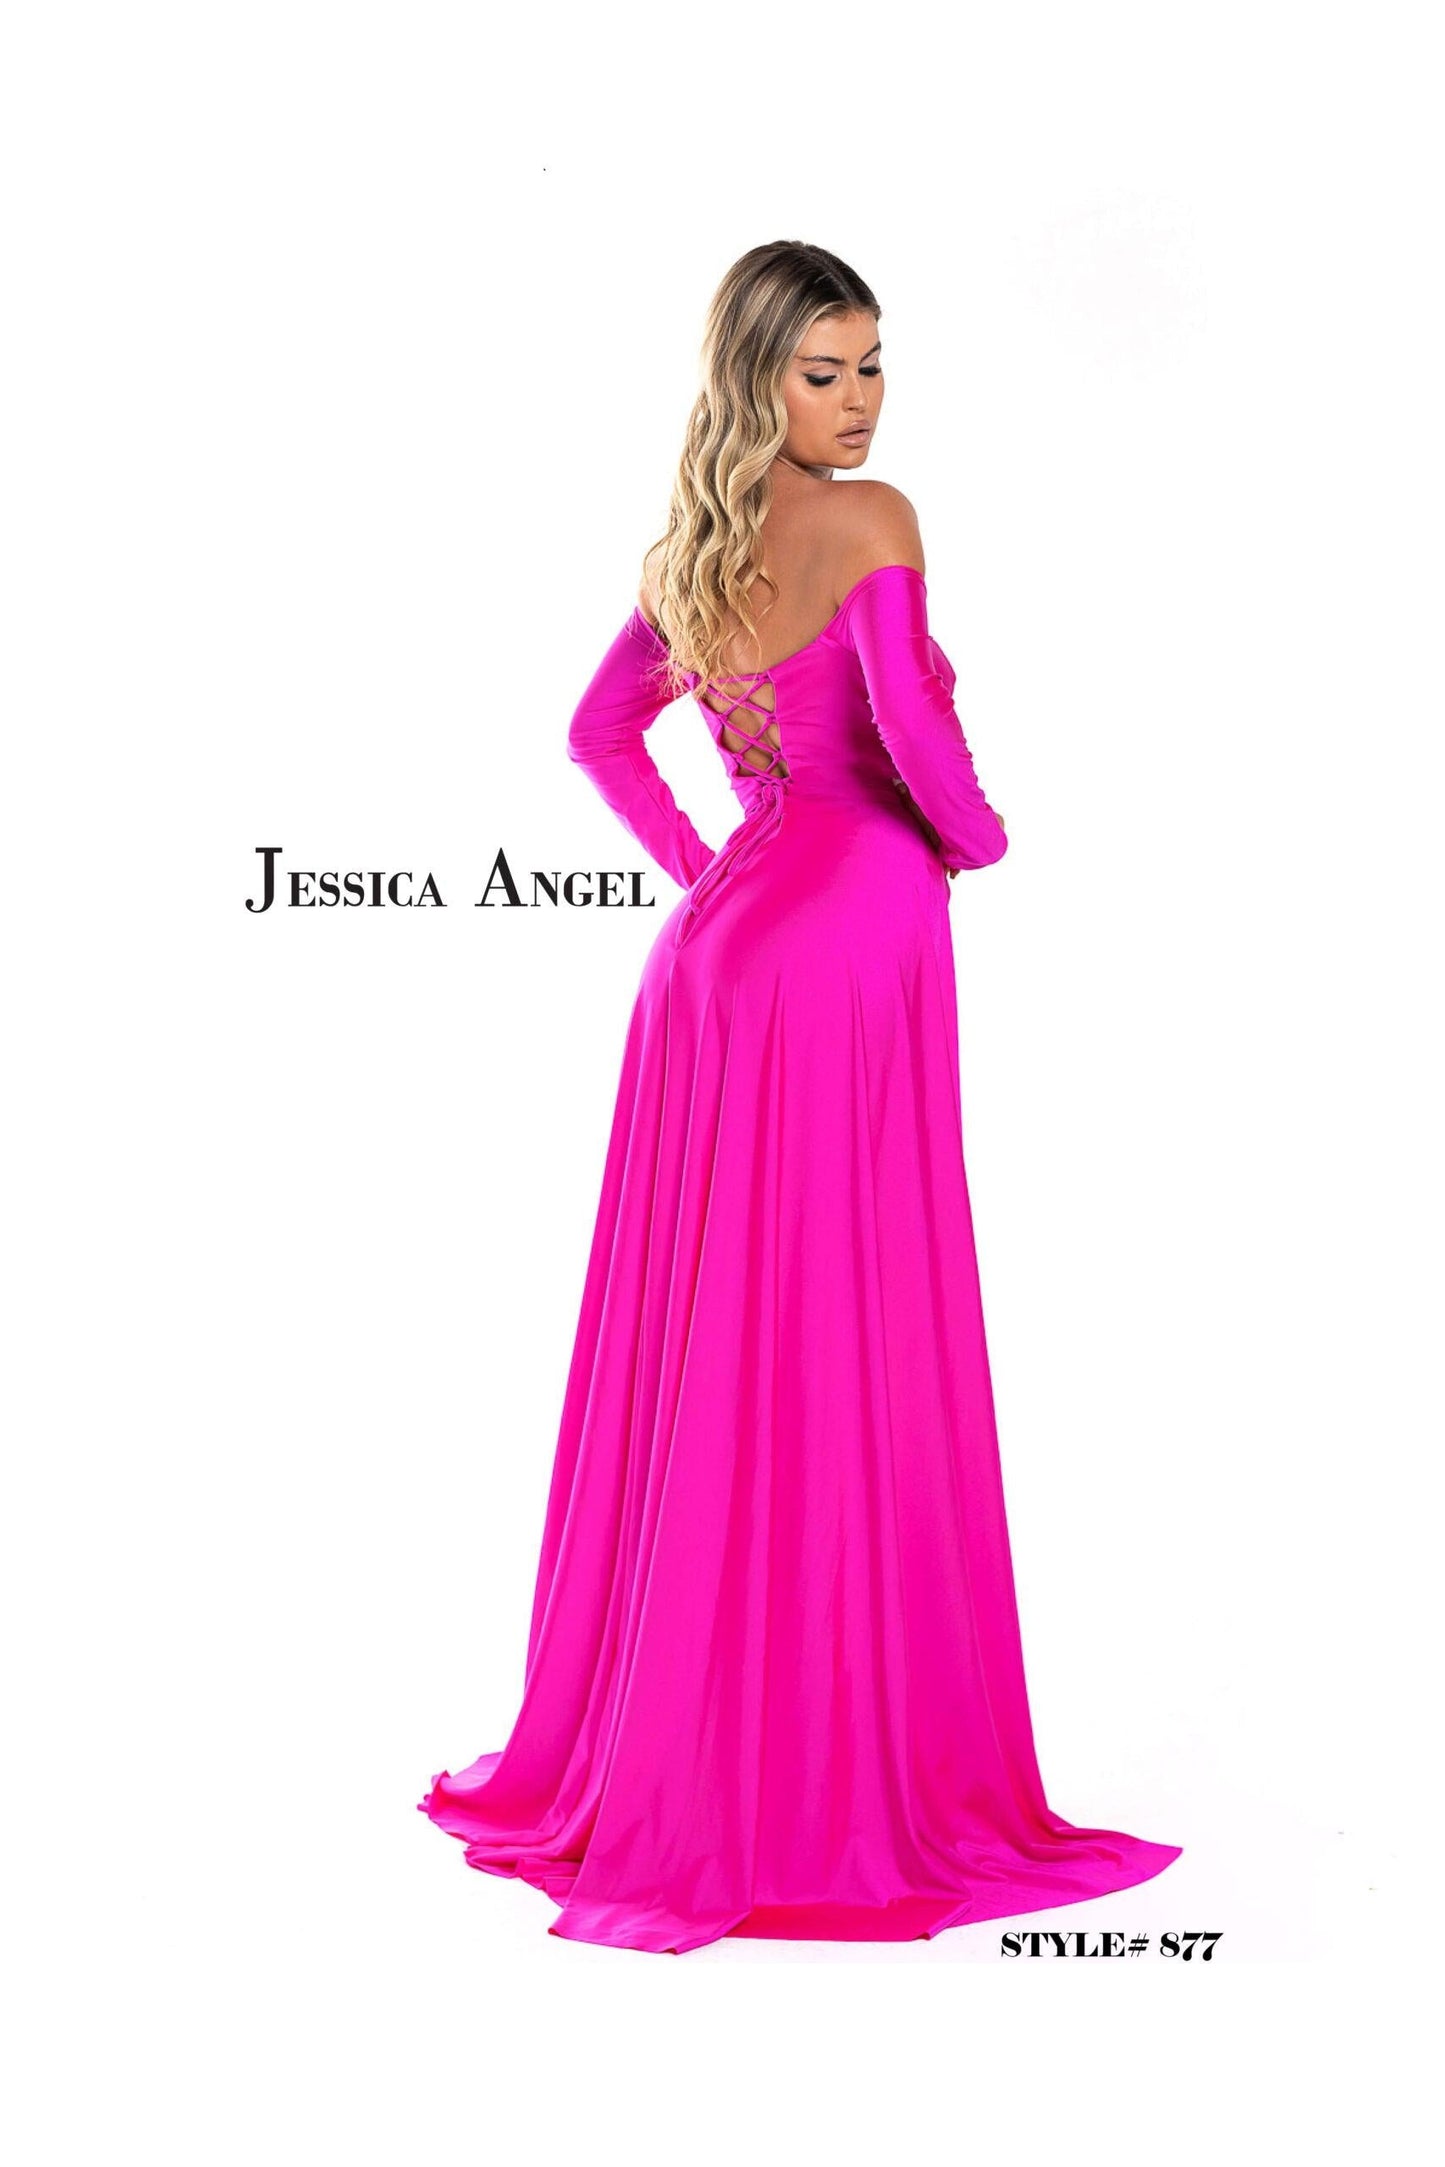 Jessica Angel Long Off Shoulder Formal Jumpsuit 877 - The Dress Outlet